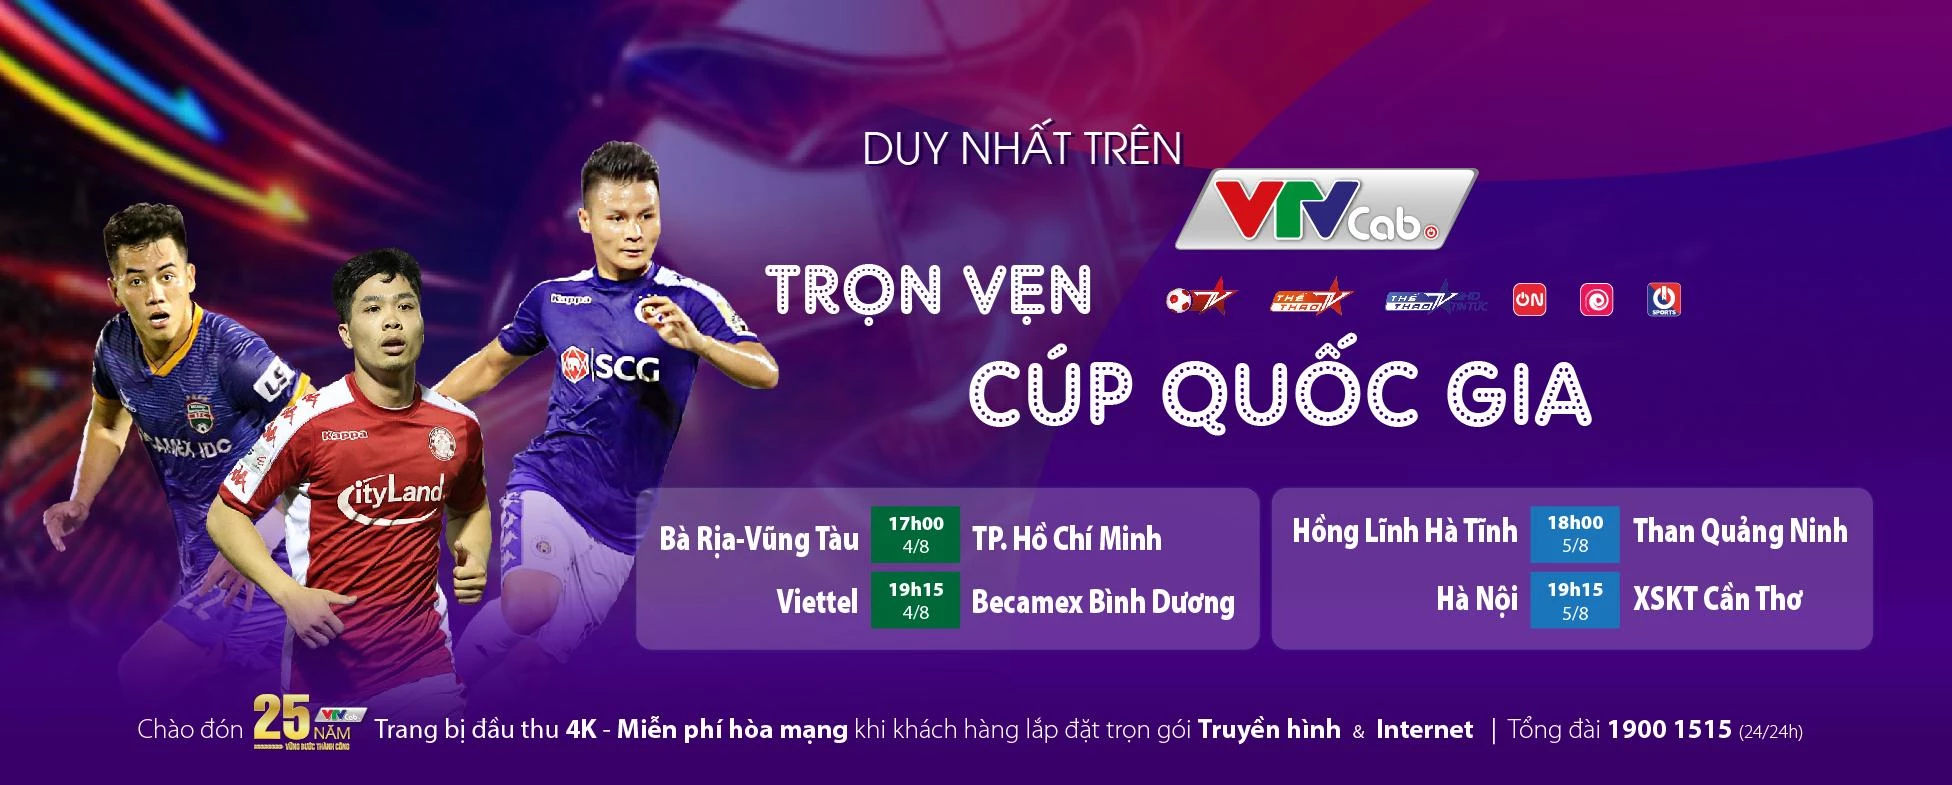 Lịch thi đấu Cúp Quốc gia mới nhất trên các kênh sóng VTVcab.